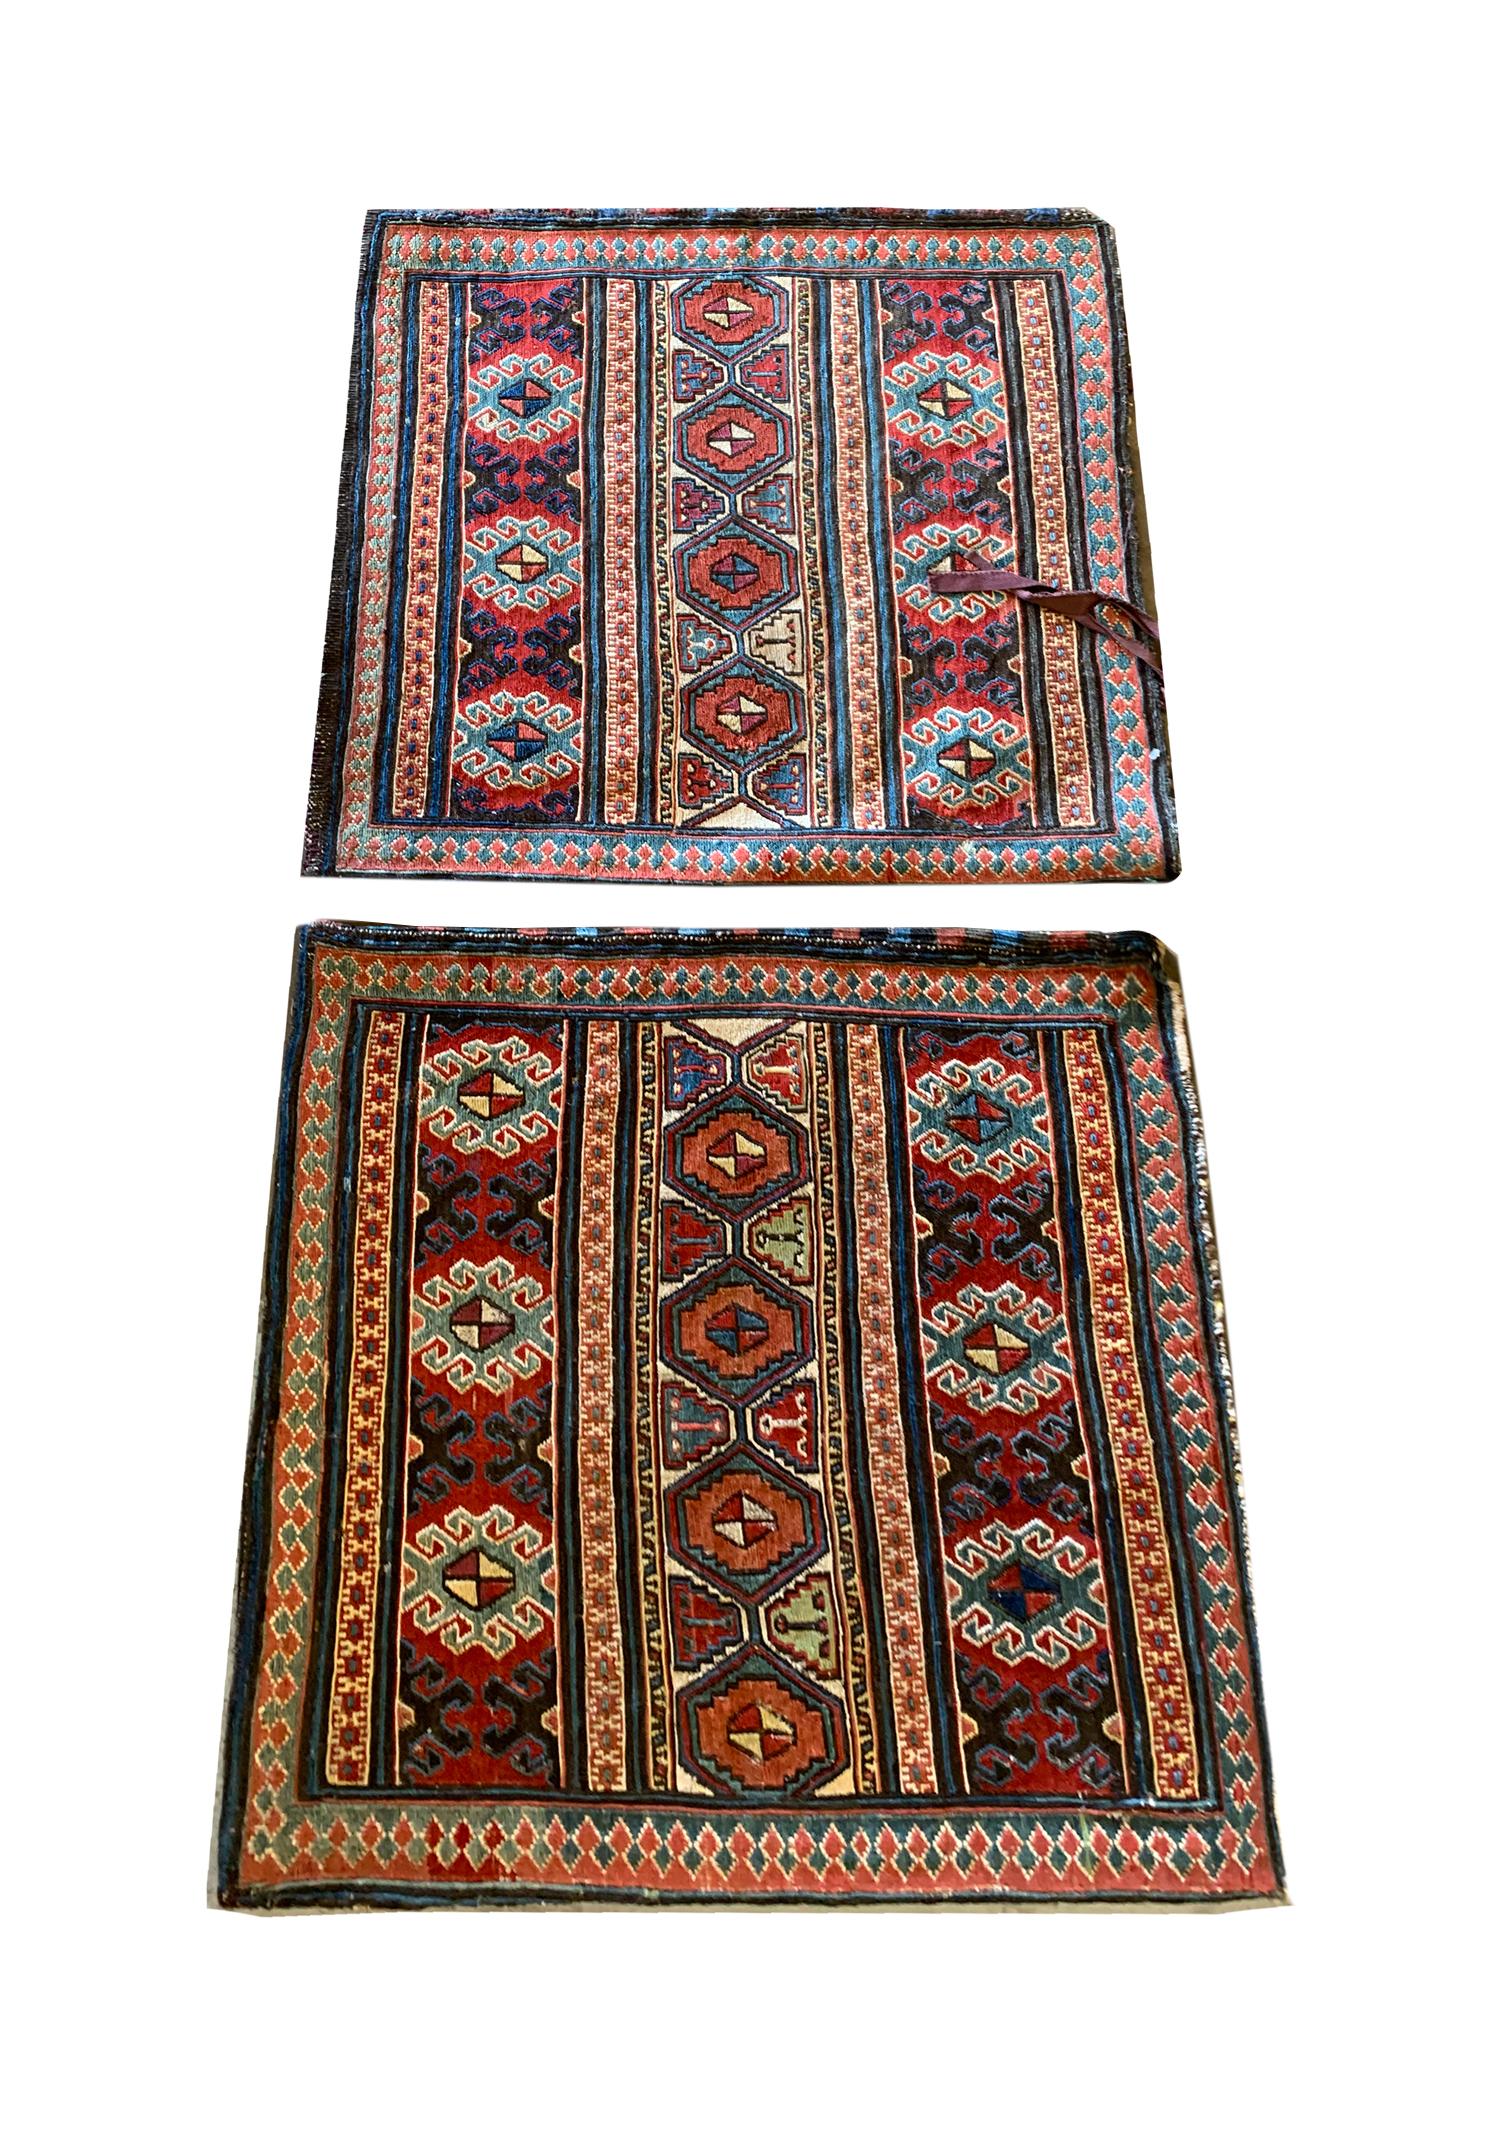 Diese handgewebten Kelim-Teppiche sind antike Stücke, die in den 1880er Jahren im aserbaidschanischen Moghan-Gebiet gewebt wurden. Das Design besteht aus einem dekorativen Streifenmuster, das mit verschlungenen Medaillons gewebt ist. Sie waren in